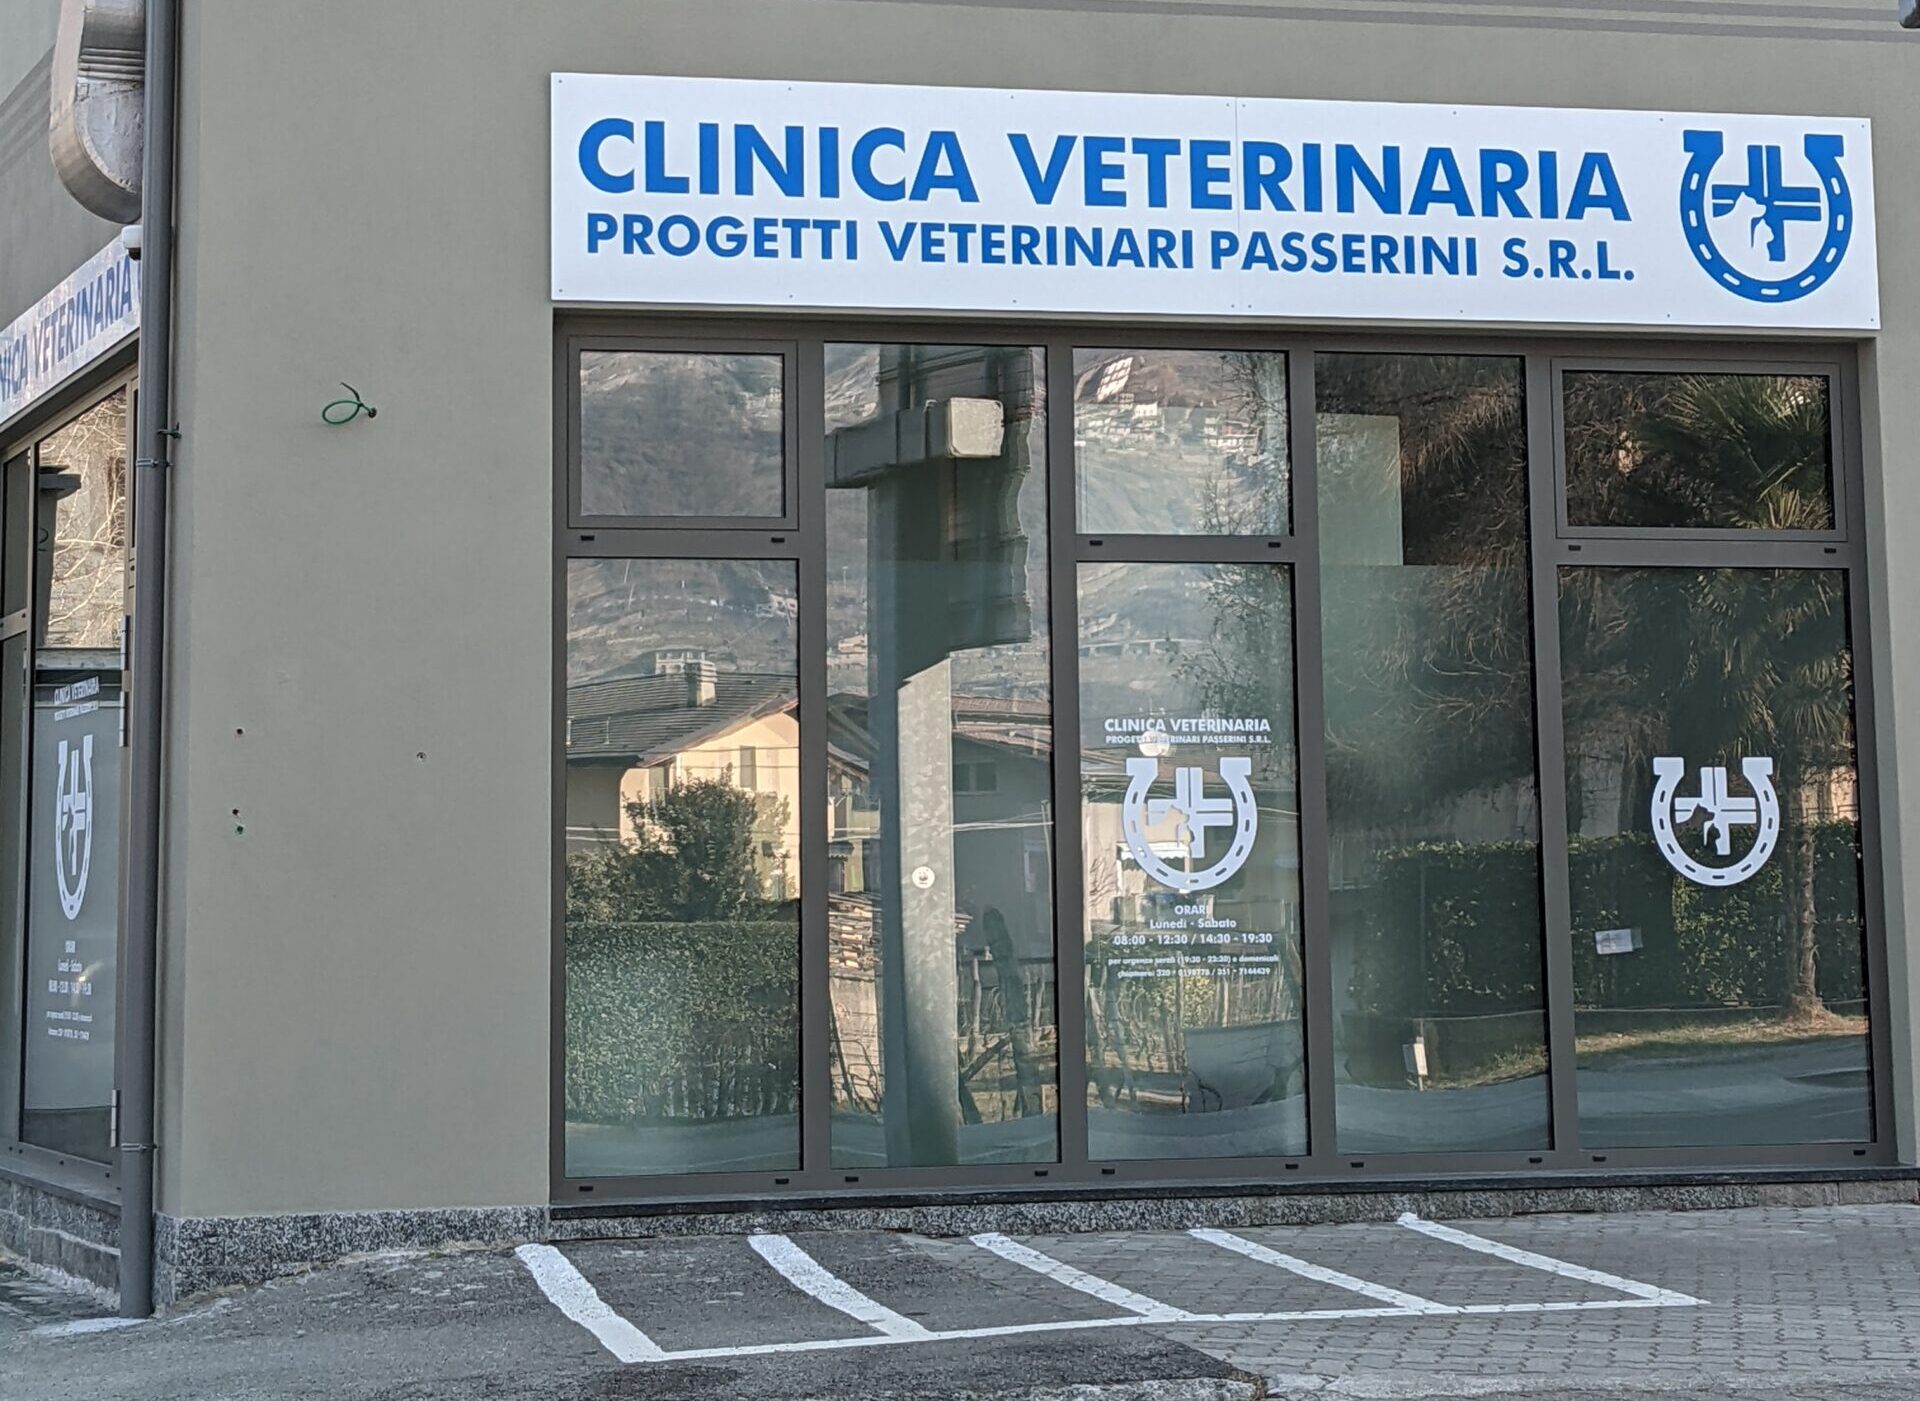 Clinica Veterinaria passerini entrata